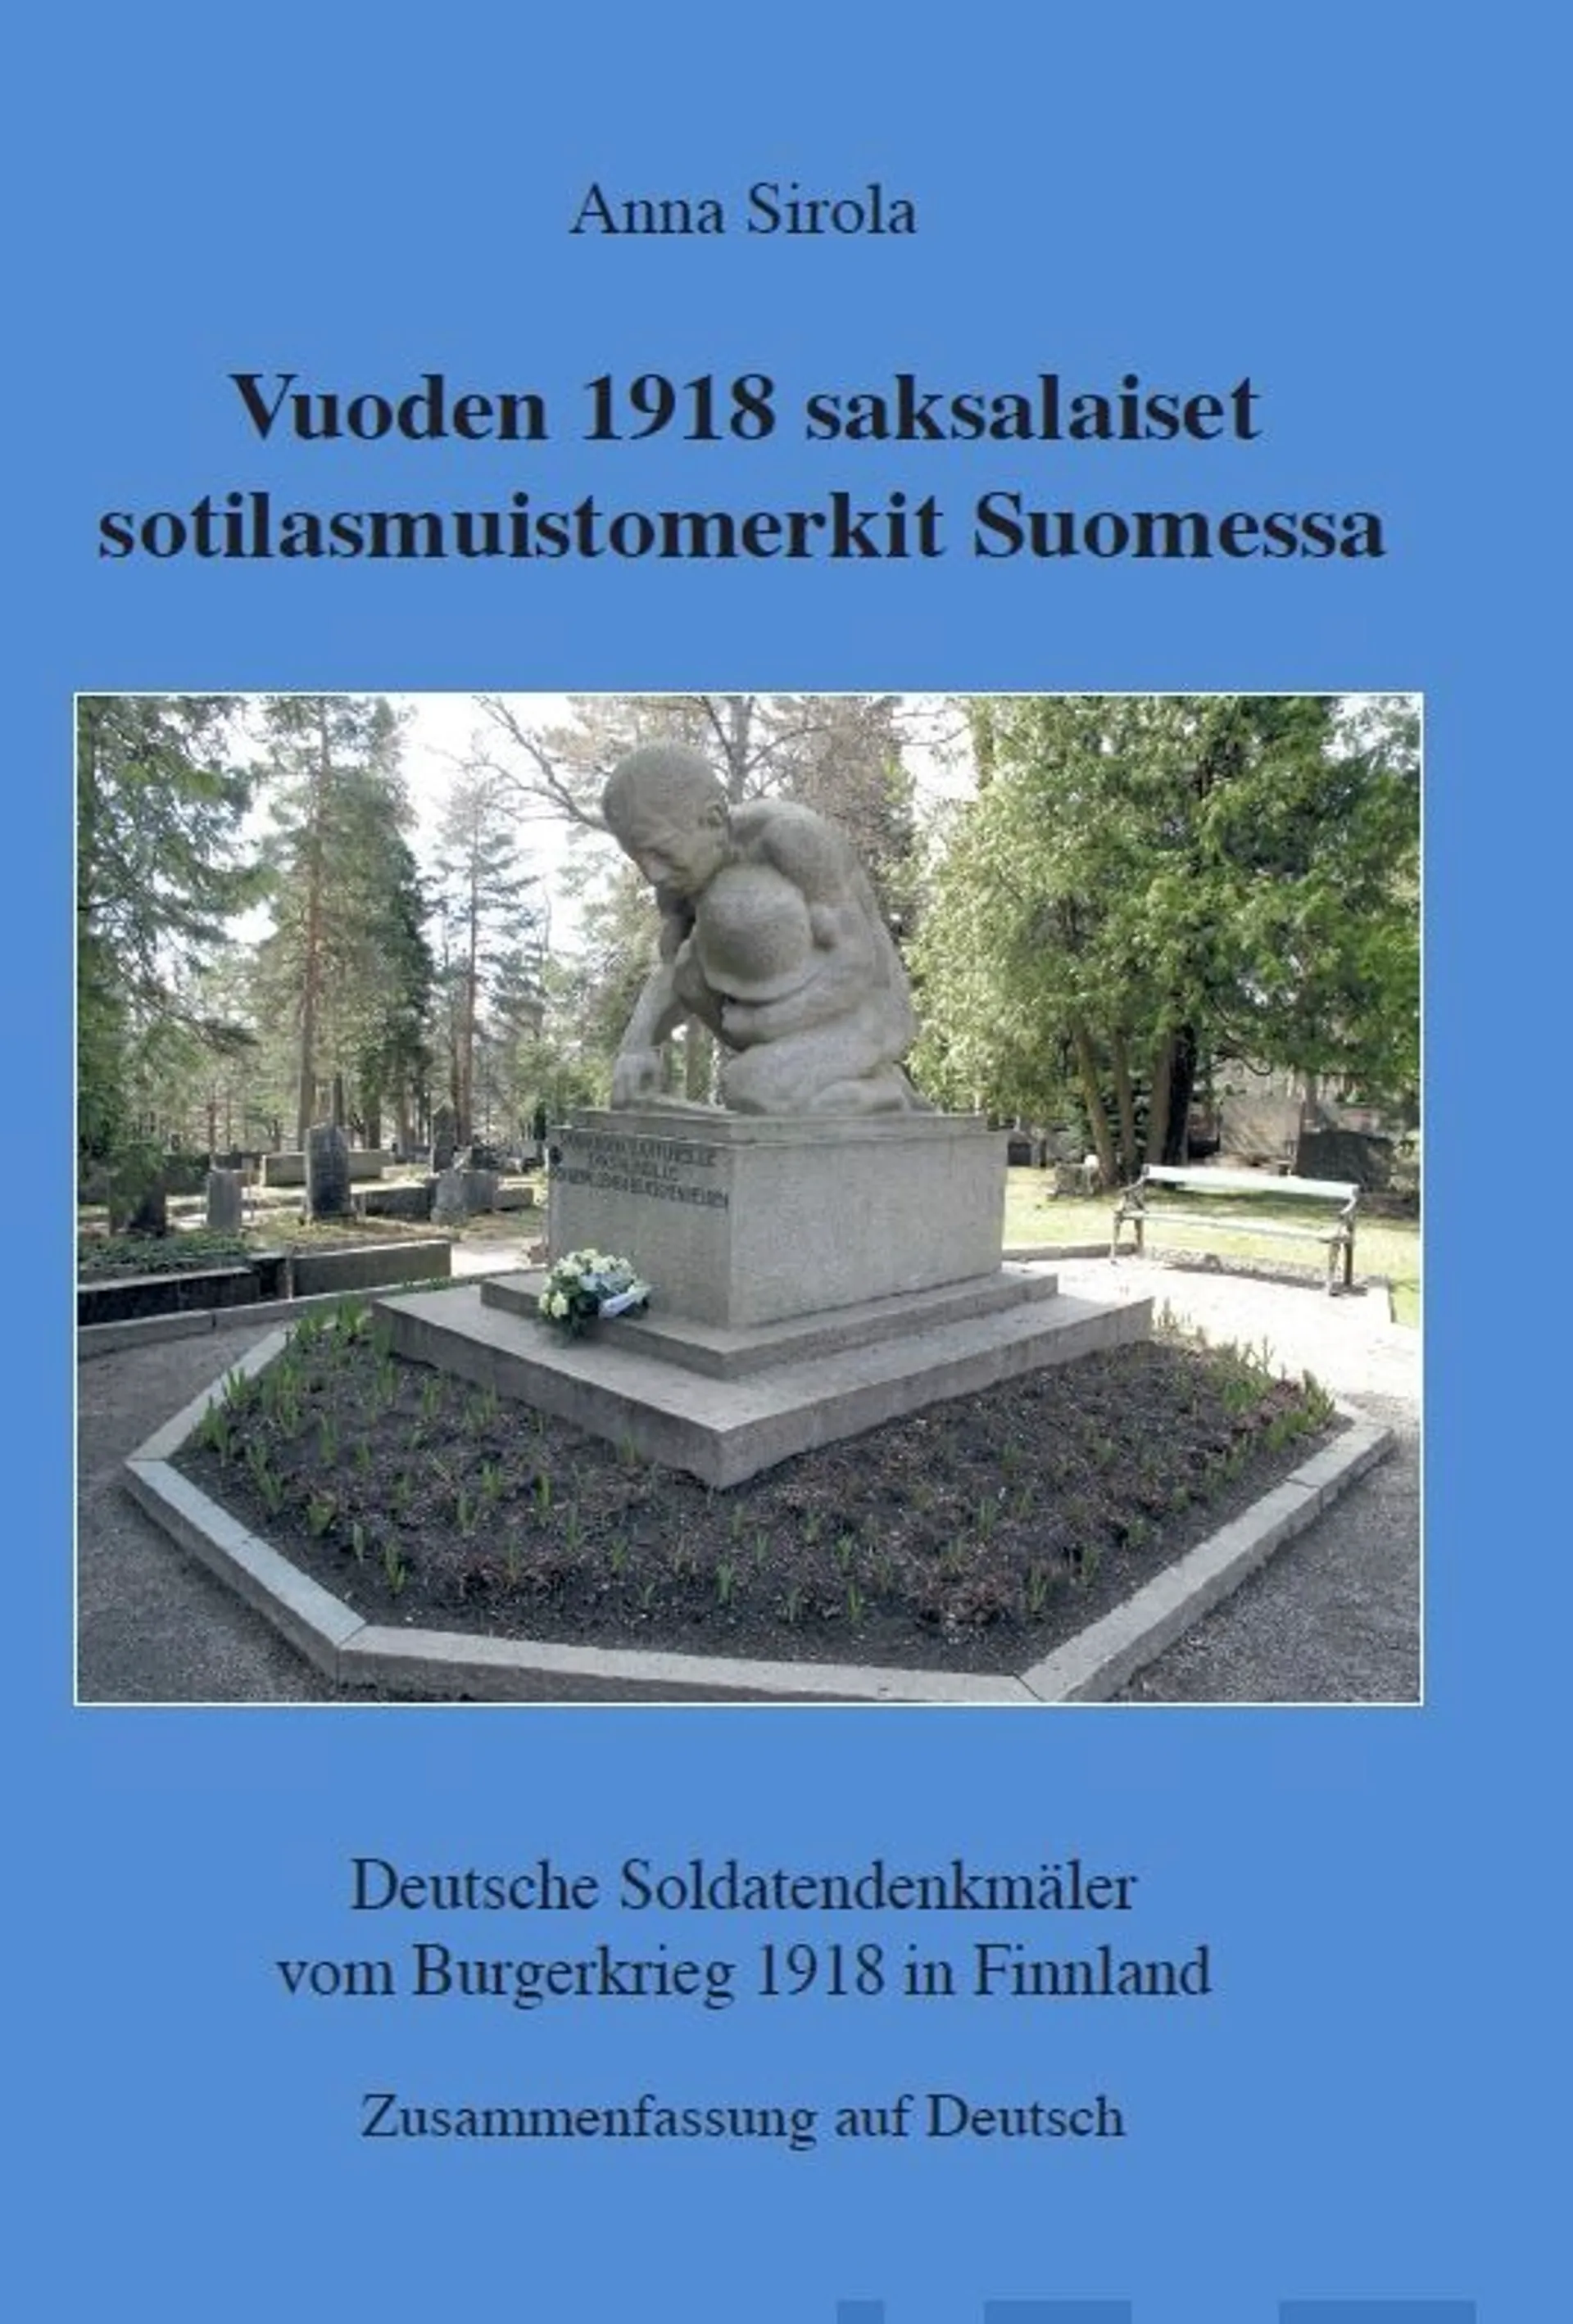 Sirola, Vuoden 1918 saksalaiset sotilasmuistomerkit Suomessa